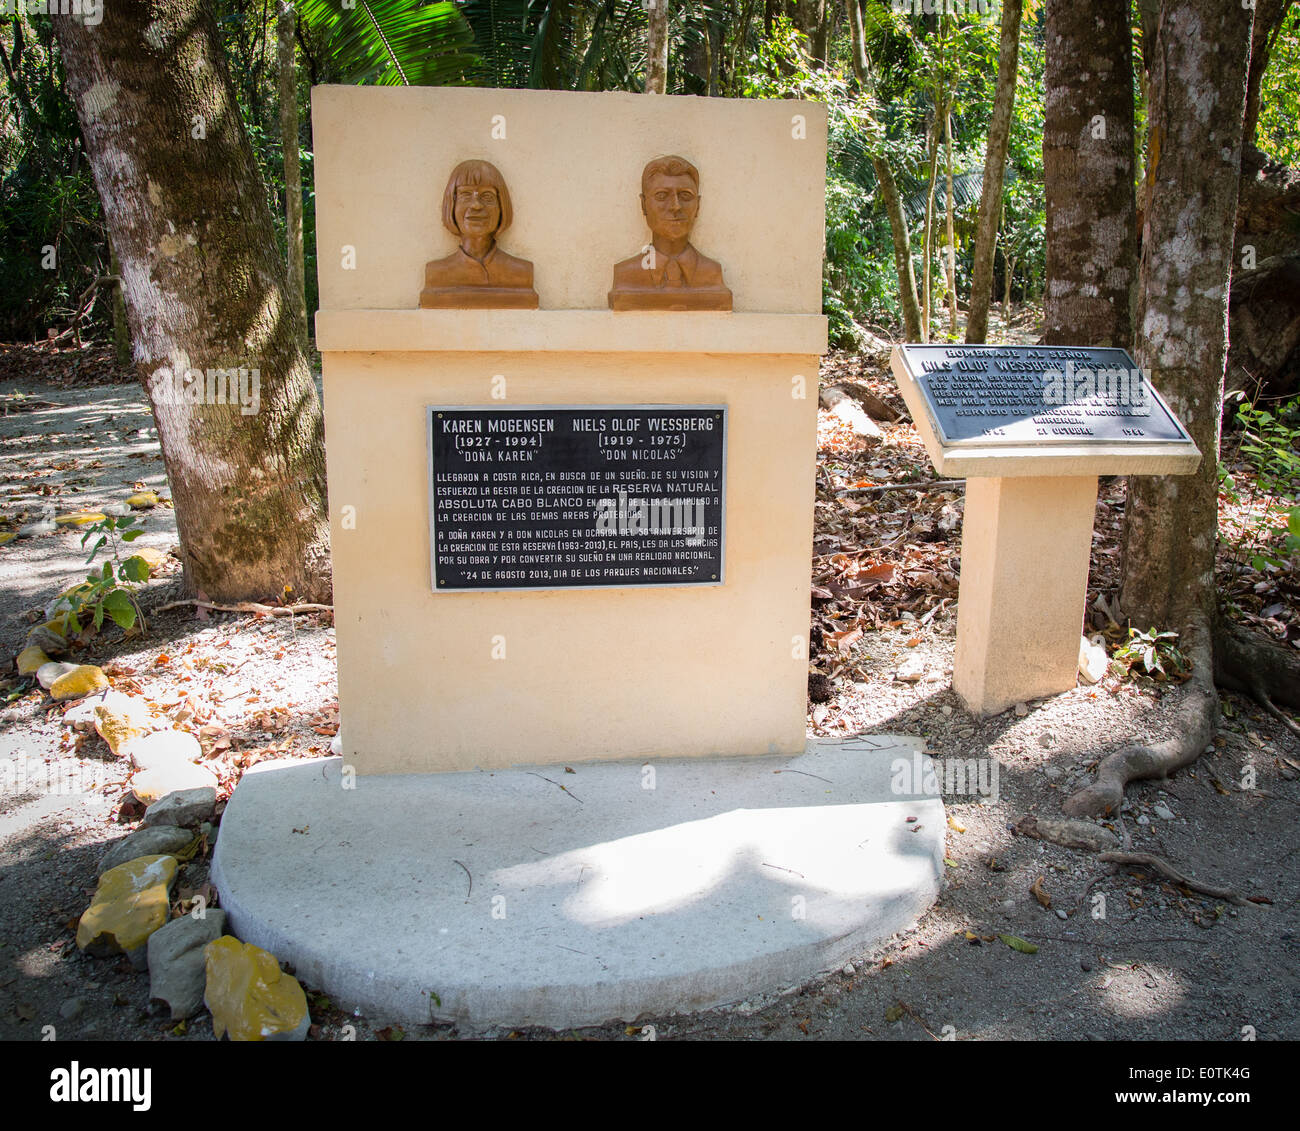 Targhe commemorative e sculture di Nicolas Wessberg e Karen Mogensen fondatori di Cabo Blanco Riserva Naturale di Costa Rica Foto Stock